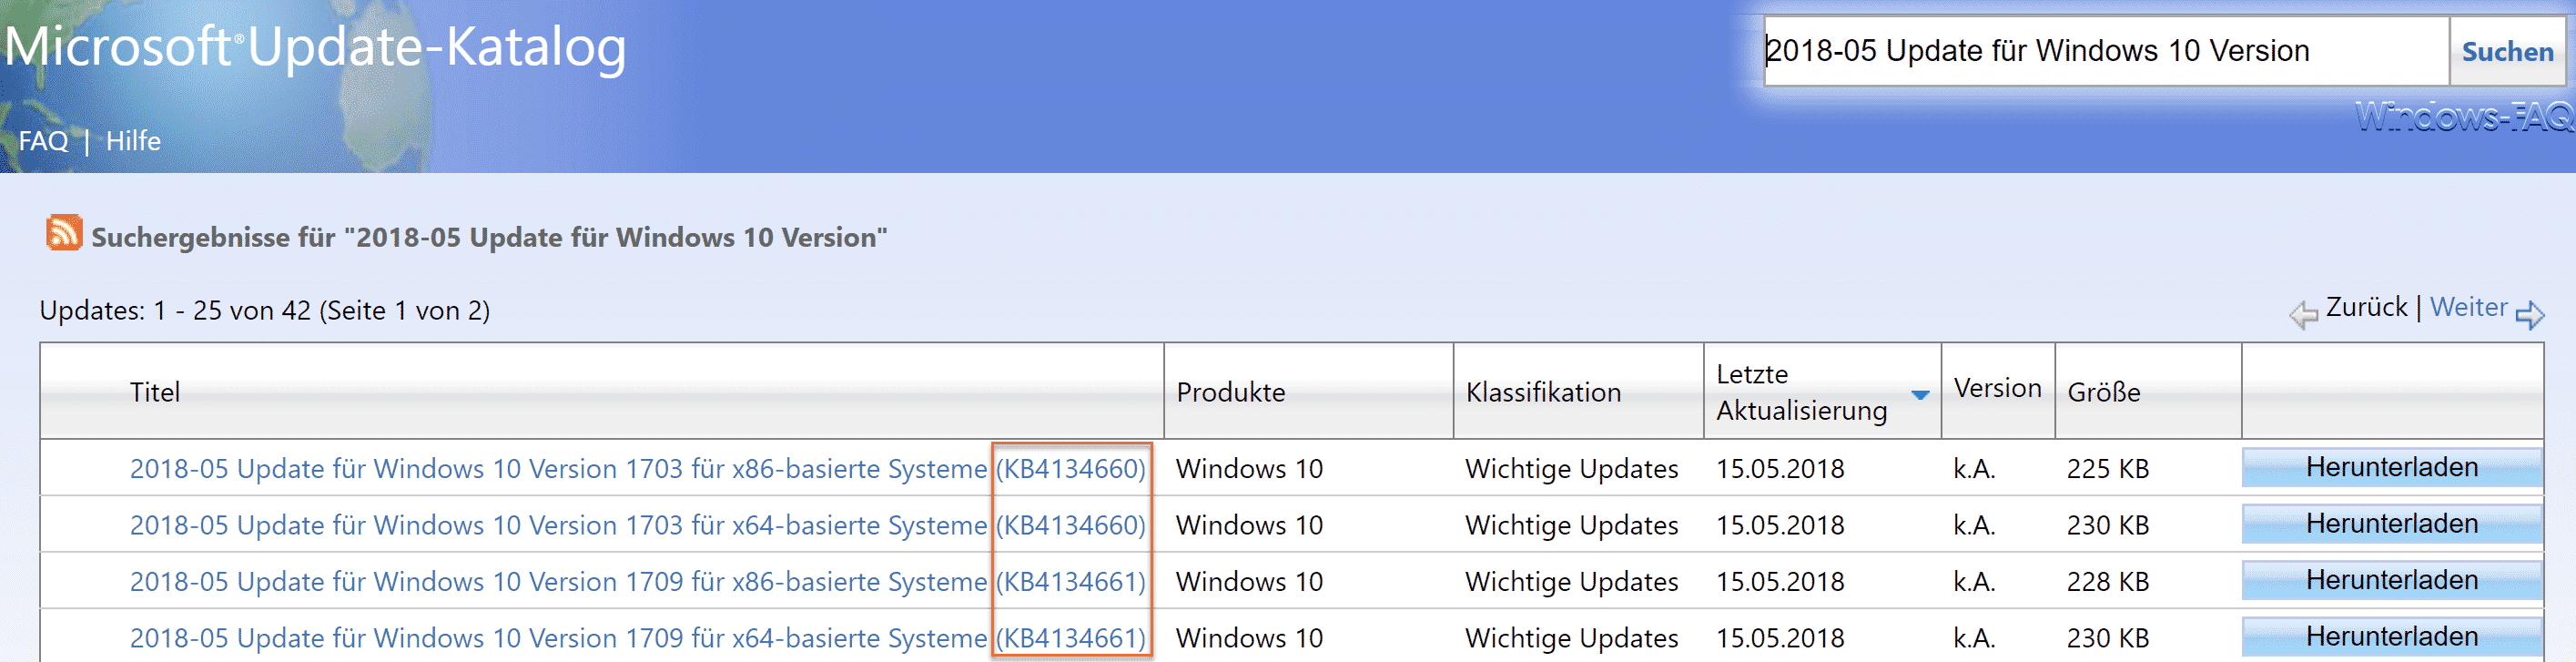 KB4134660 für Windows 10 Version 1703 und KB4134661 für 1709 erschienen